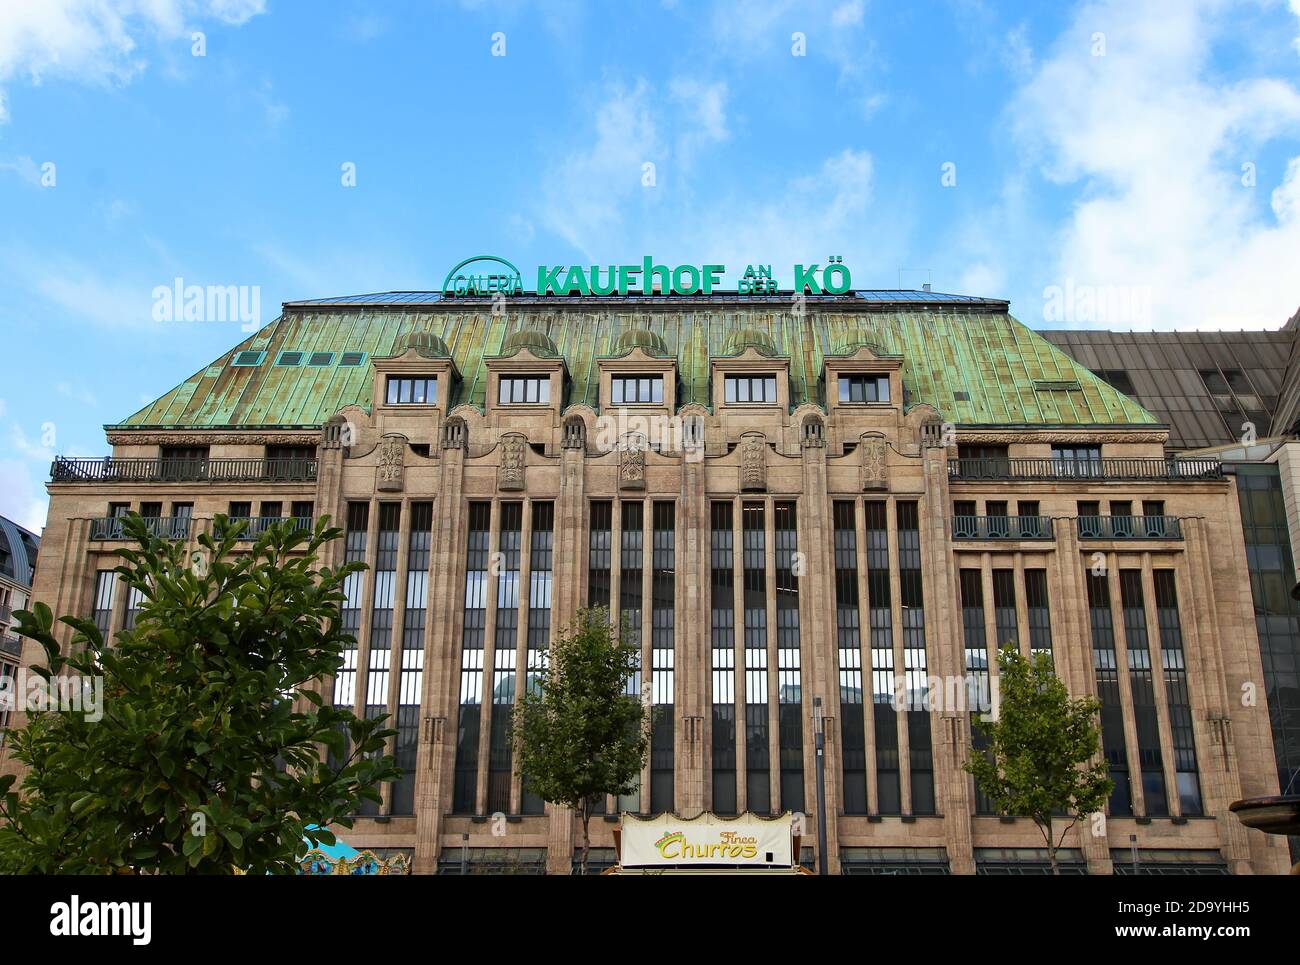 Bellissimo edificio storico del famoso grande magazzino Kaufhof an der Kö, costruito dal 1907 al 1909. Foto Stock